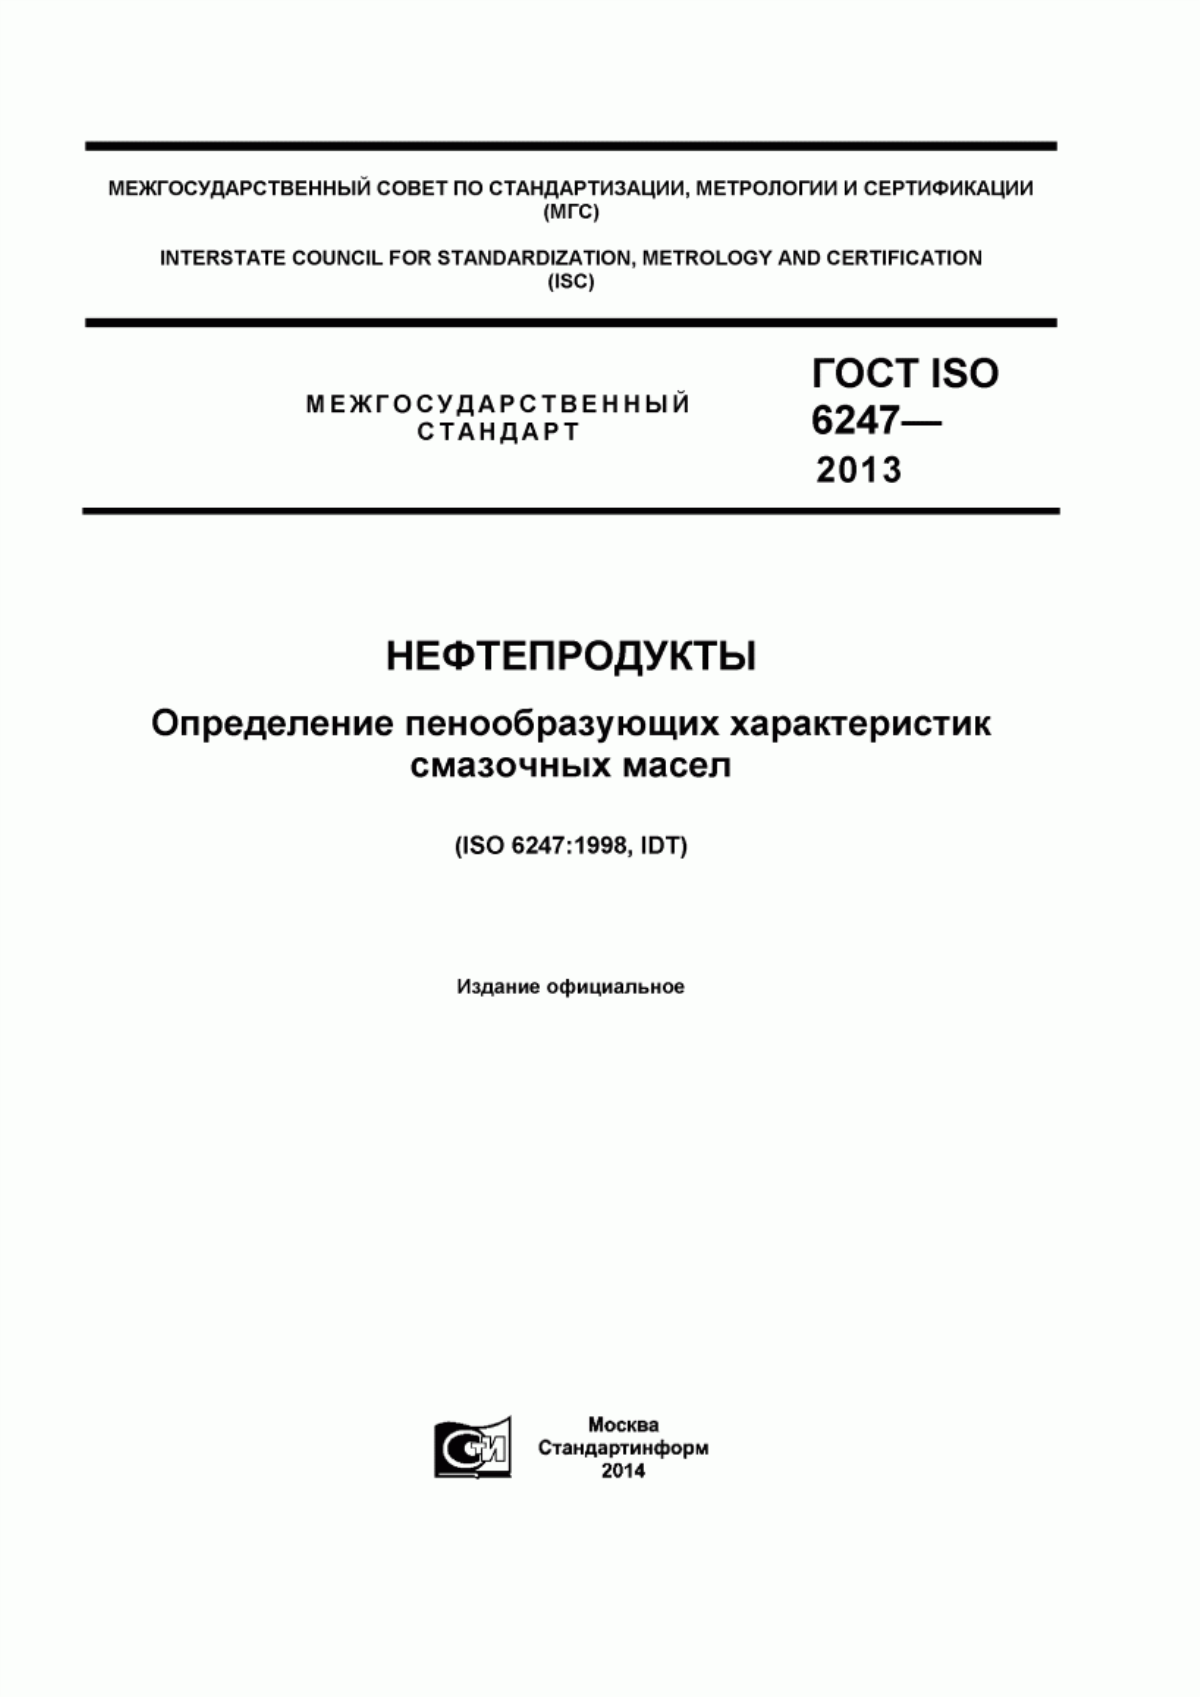 ГОСТ ISO 6247-2013 Нефтепродукты. Определение пенообразующих характеристик смазочных масел